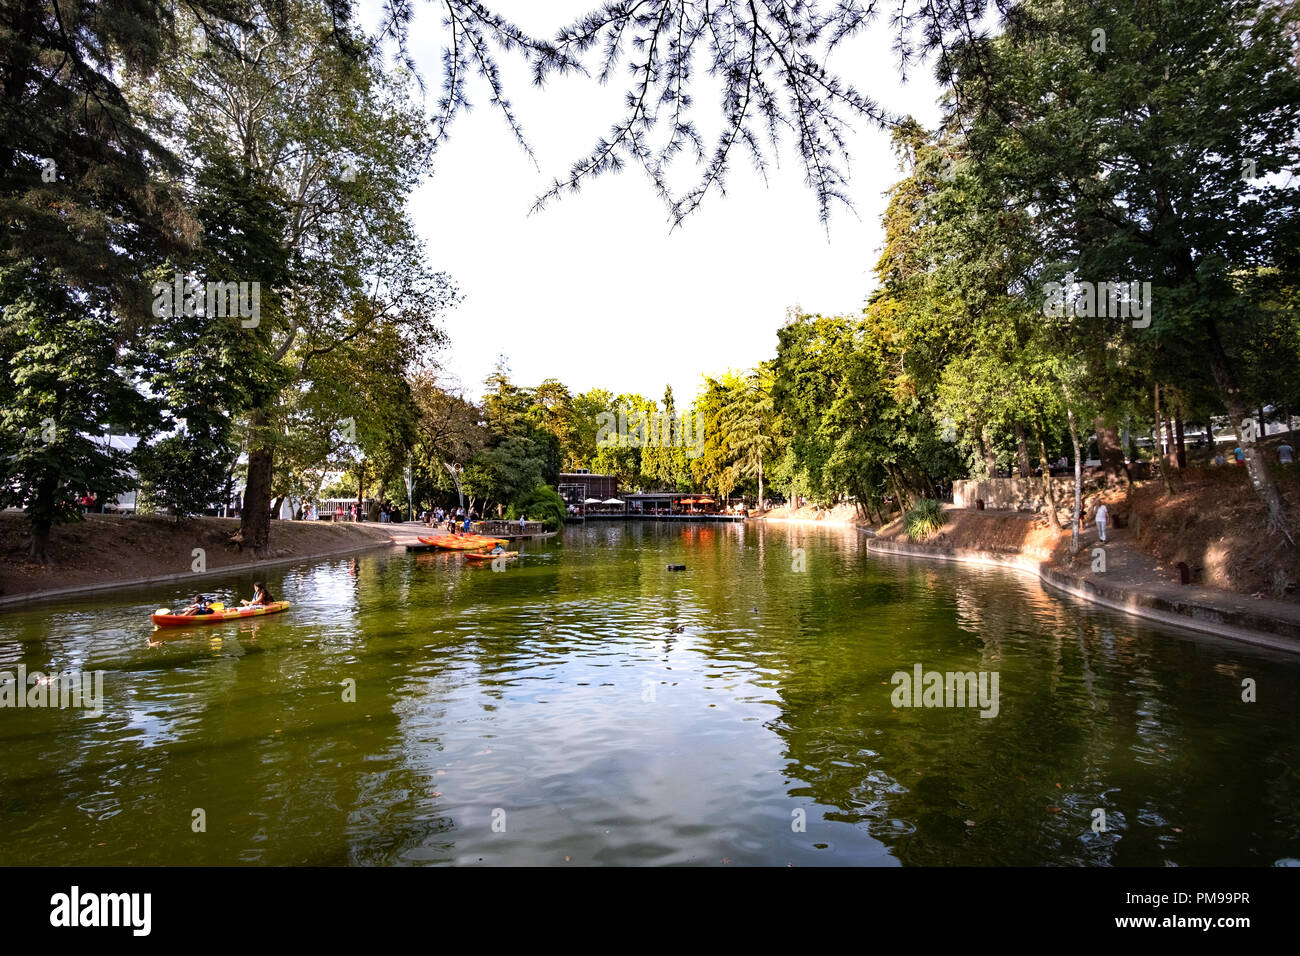 Lago dentro de un parque urbano en la ciudad de Braga, con algunas personas en remar caiaques Foto de stock